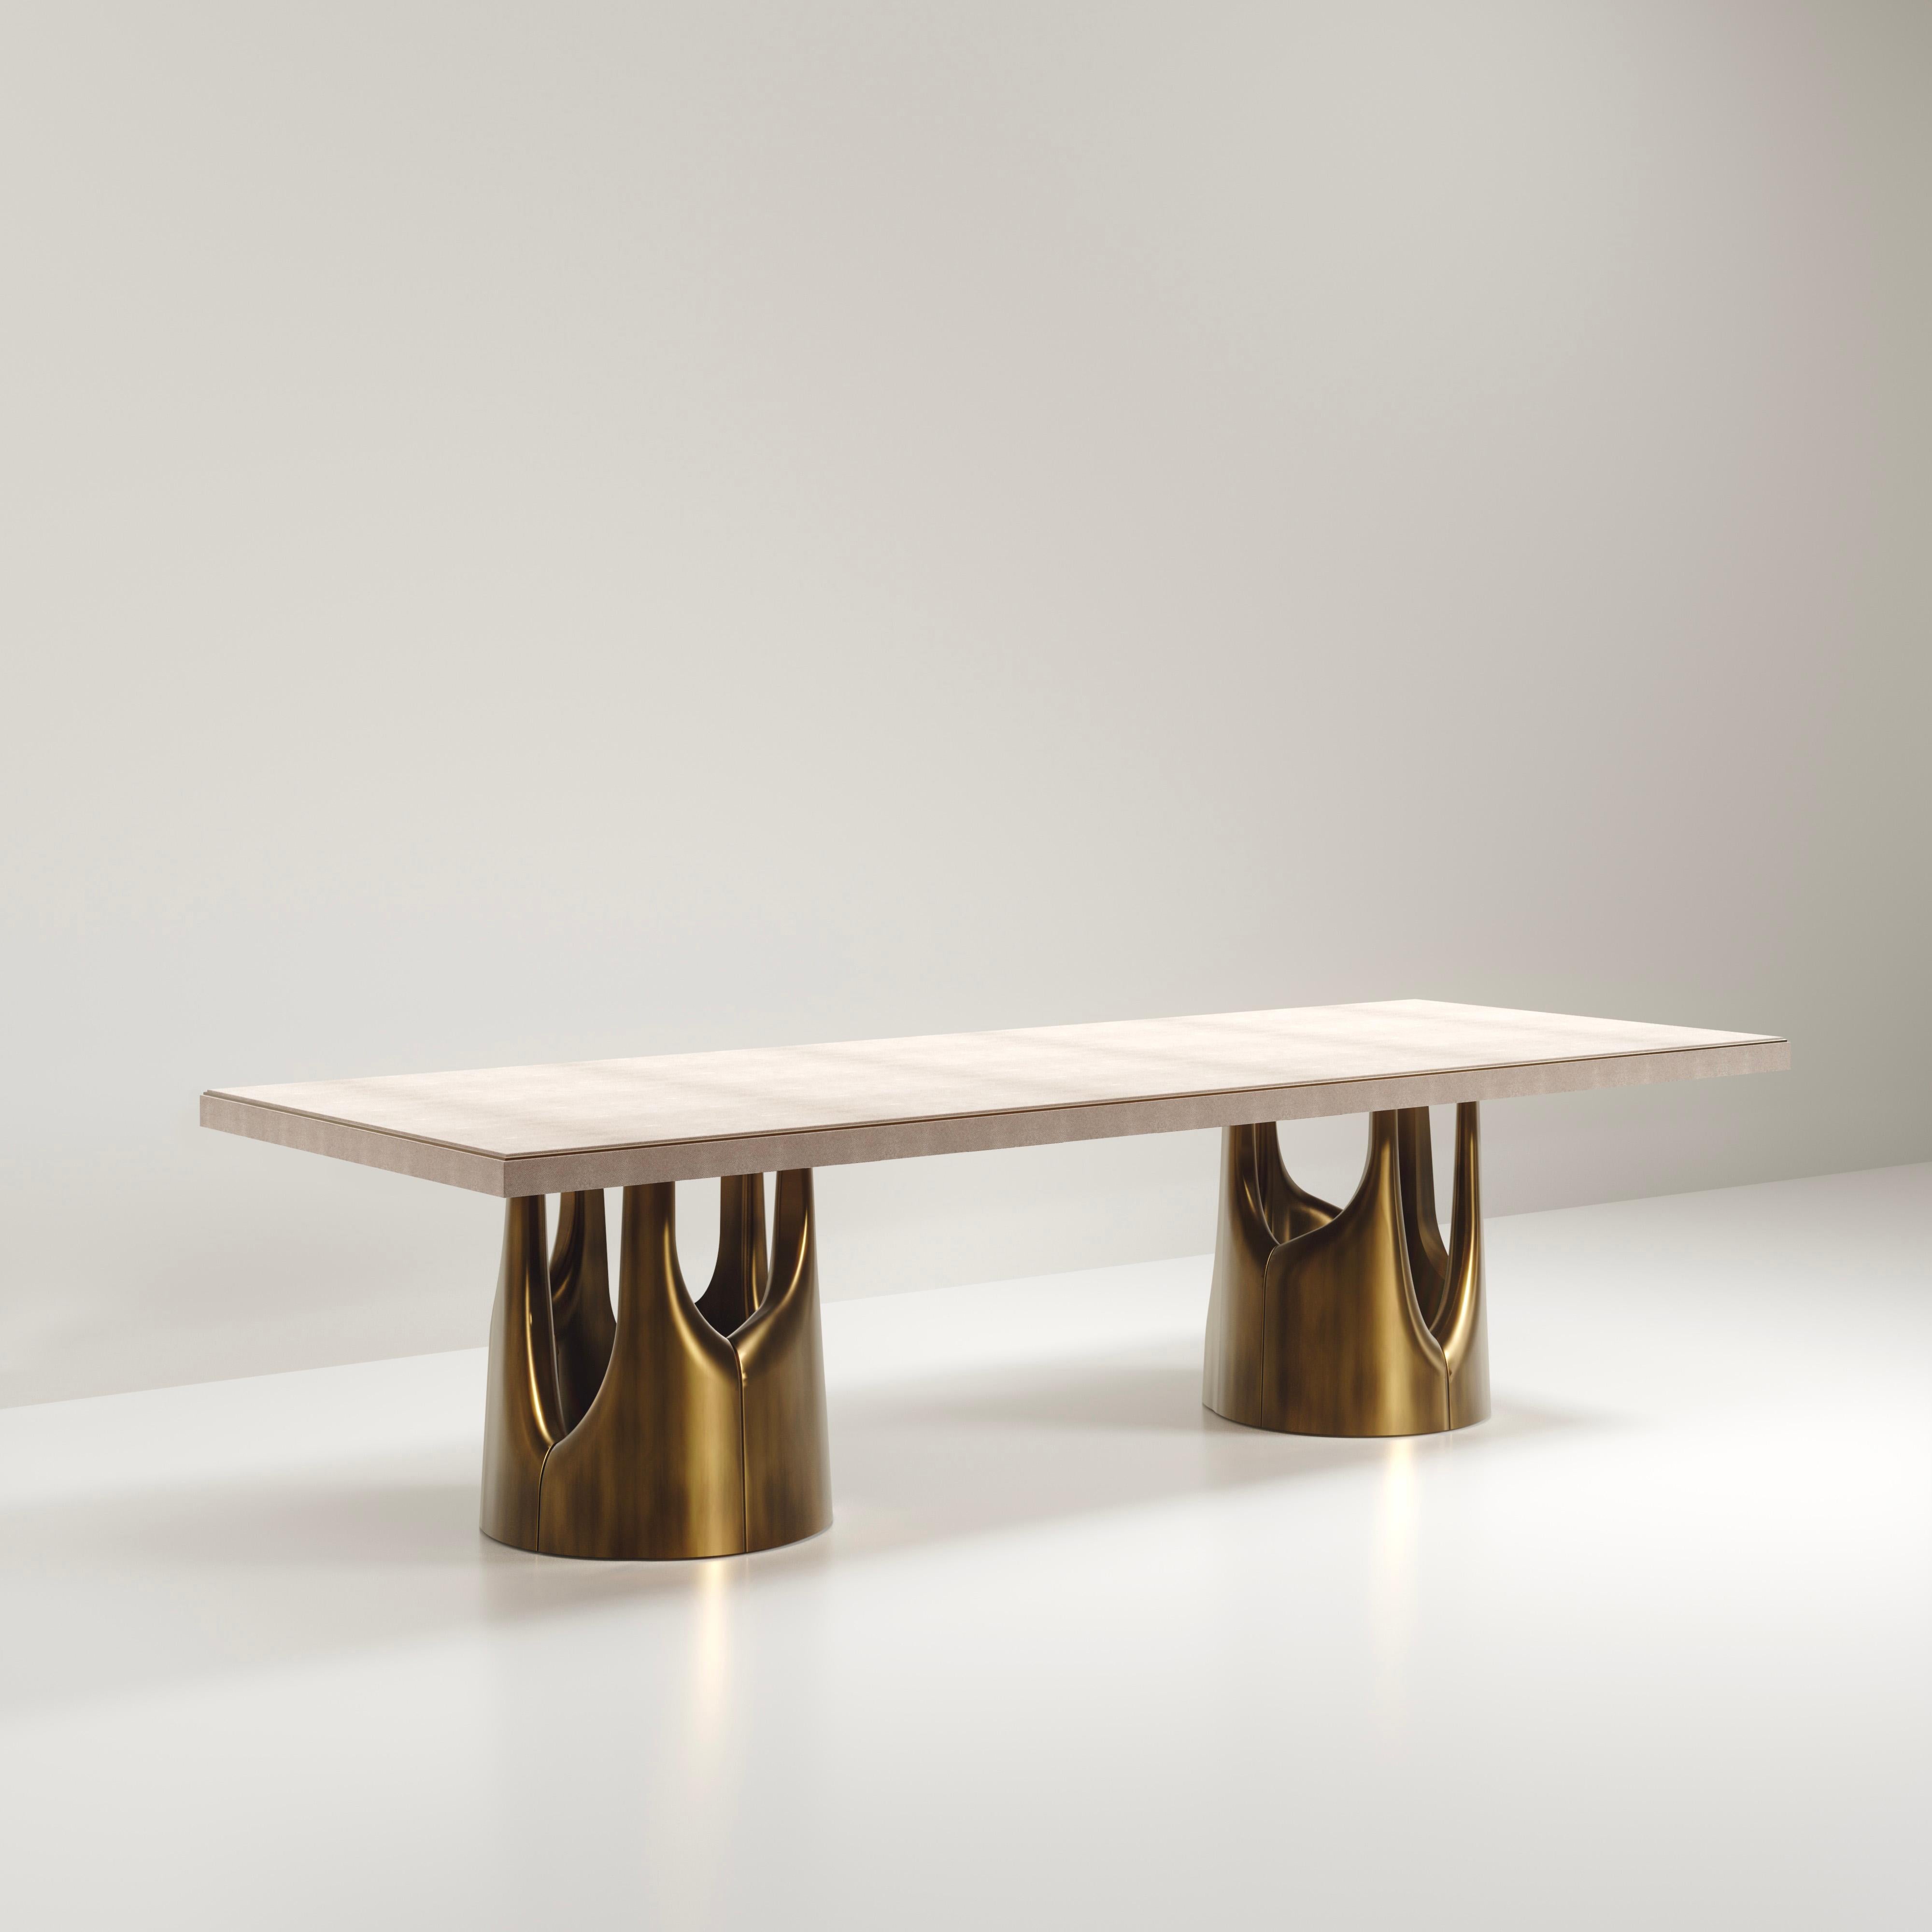 La table de salle à manger Triptych I de R&Y Augousti est une étonnante pièce sculpturale à multiples facettes. Les magnifiques détails gravés à la main sur la base en bronze-patine témoignent de l'incroyable travail artisanal d'Augousti. Le dessus